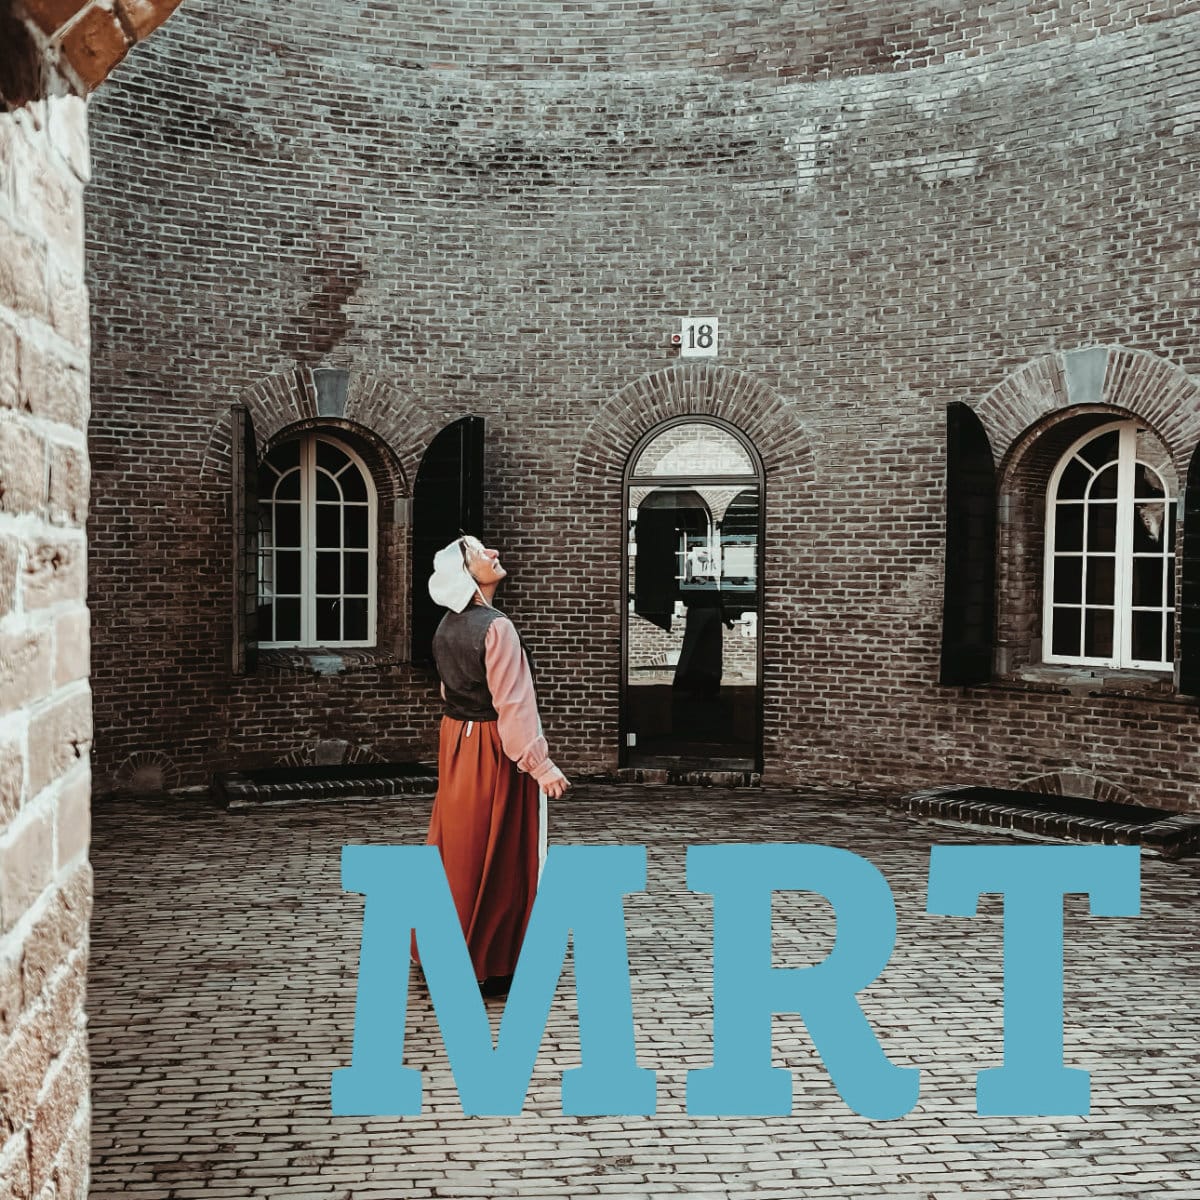 Een vrouw, verkleed als wasvrouw in lange rok, jakje en met een wit kapje op, Staat op de binnenplaats van een historisch gebouw en kijkt omhoog. Over de afbeelding staan grote blauwe letters: MRT